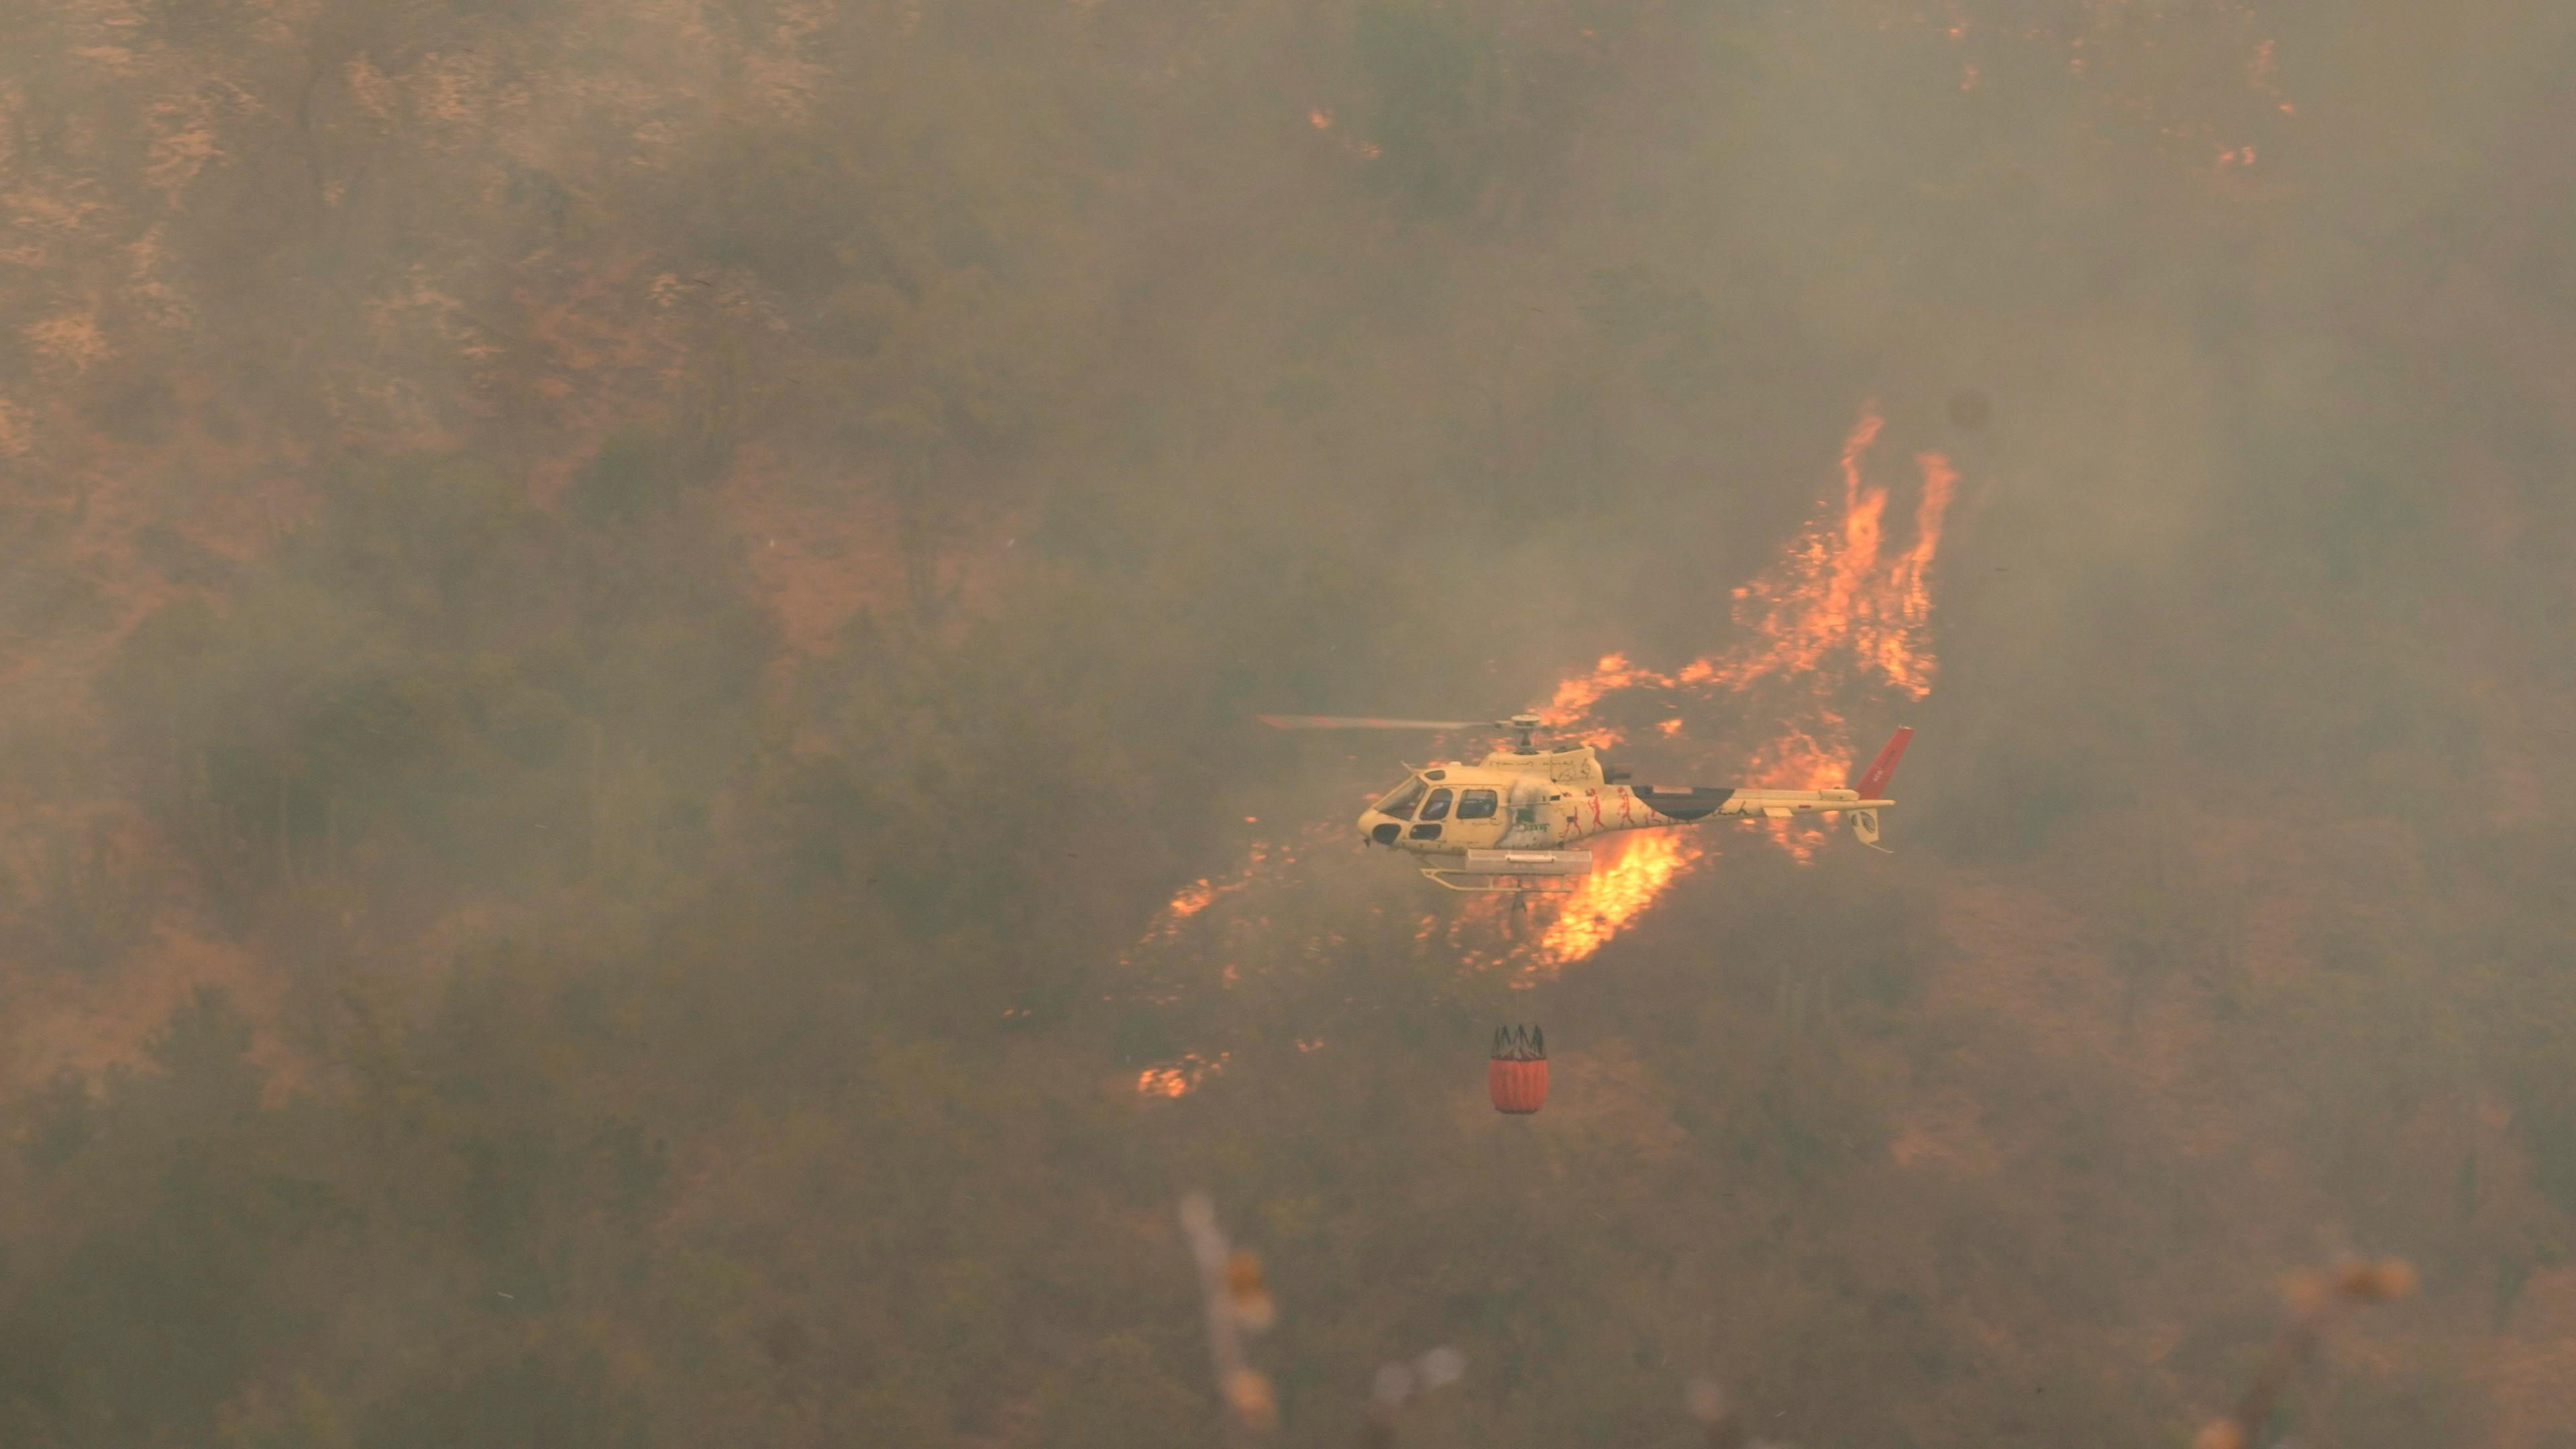 Chile, Vina del Mar: Ein Hubschrauber fliegt über einen Waldbrand, der sich ausgebreitet hat. 